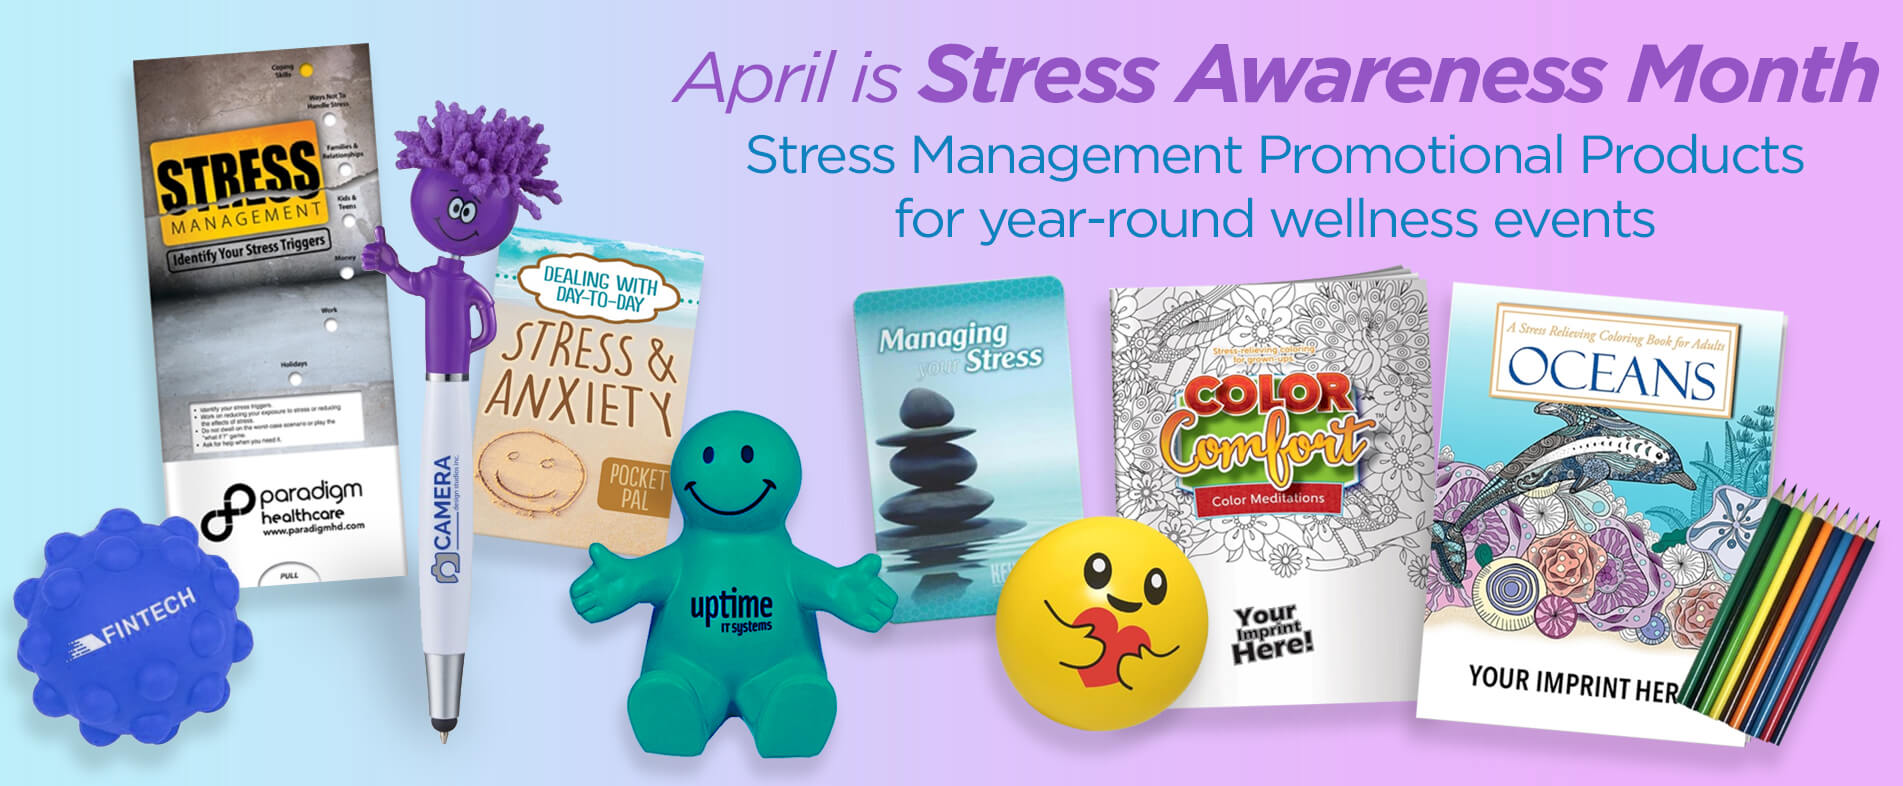 Stress Awareness Month